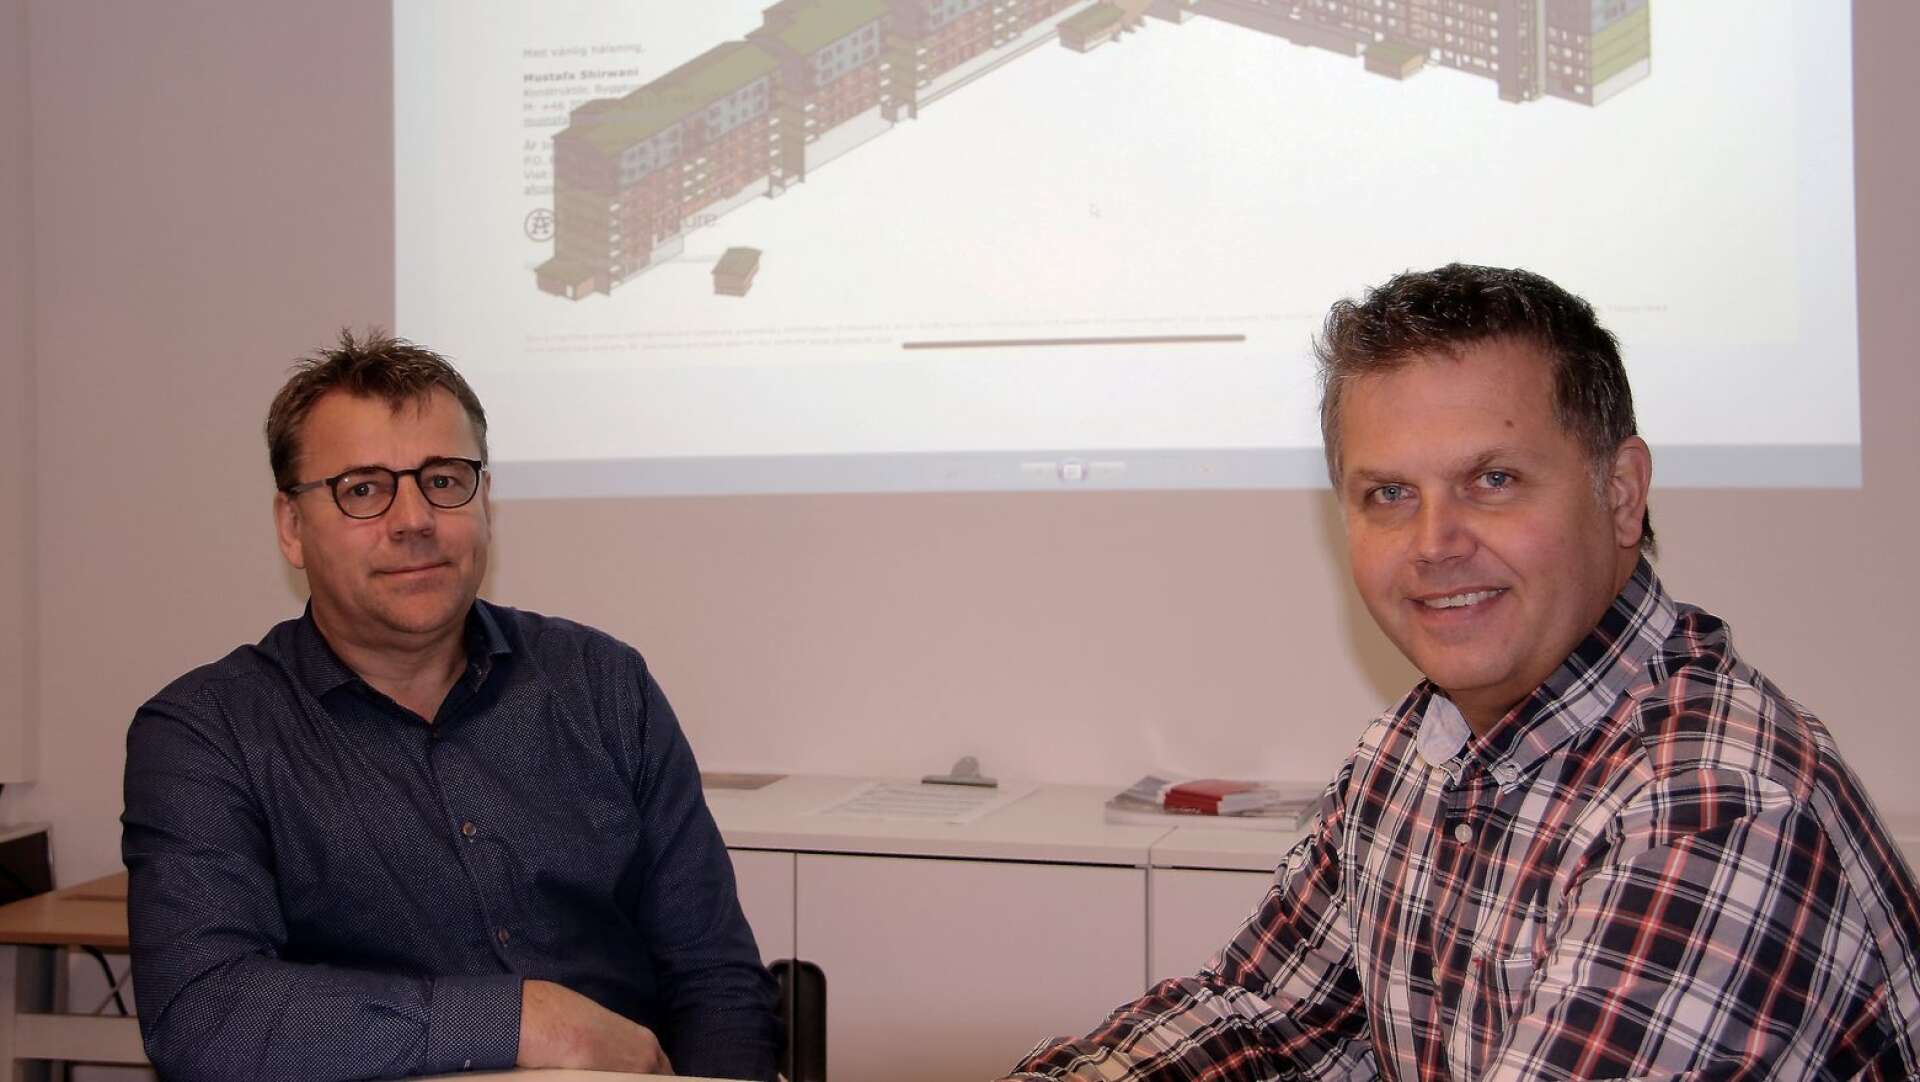 Peter Andersson, vd, och David Hesselroth, fabrikschef för Prefab på Sven Johansson Bygg AB ser stora möjligheter med den nya projektet i Göteborg.